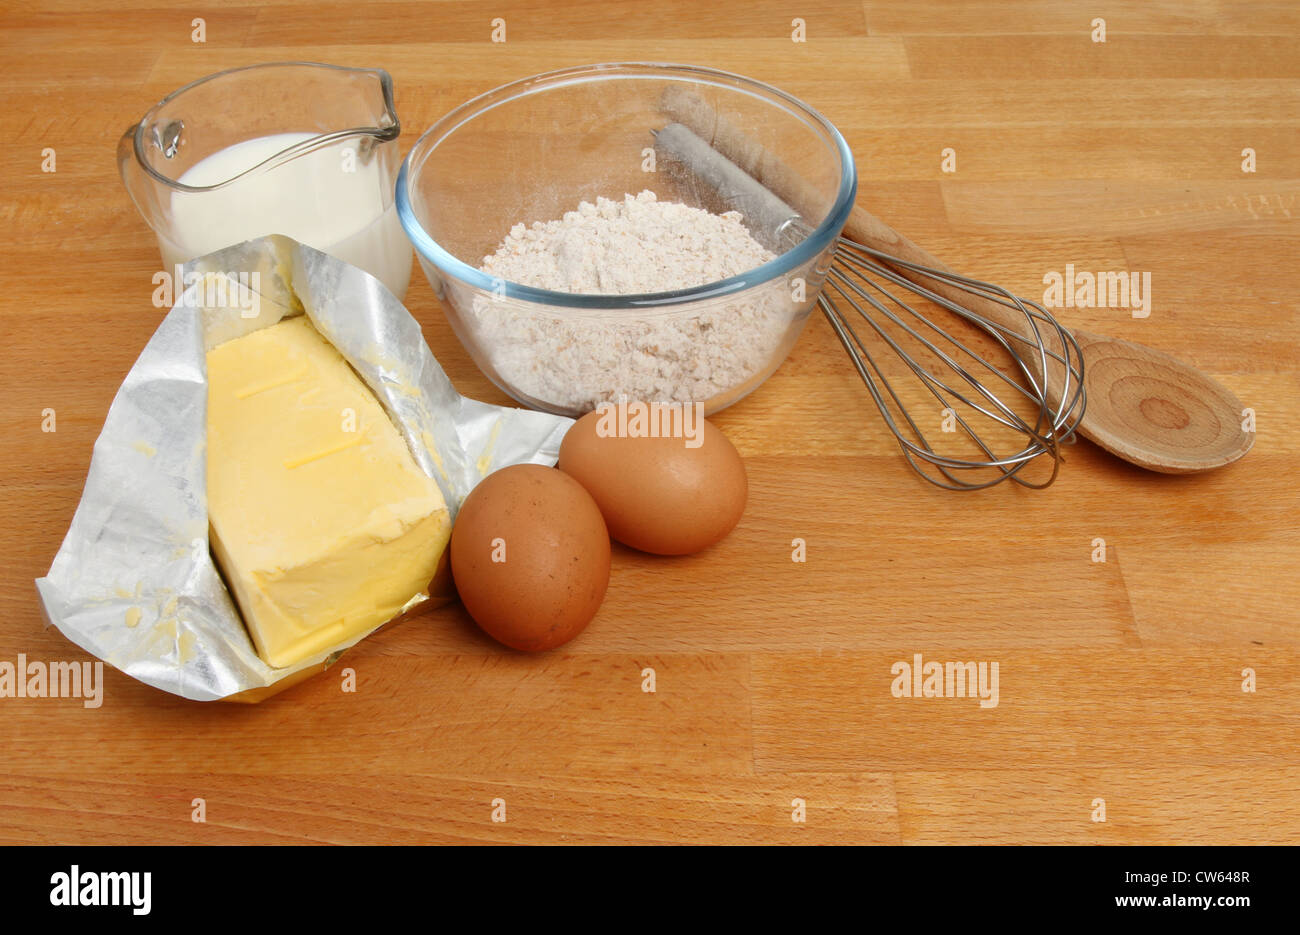 Ingrédients, la farine, les œufs, la margarine, le lait et des ustensiles de cuisine sur un plan de travail en bois Banque D'Images